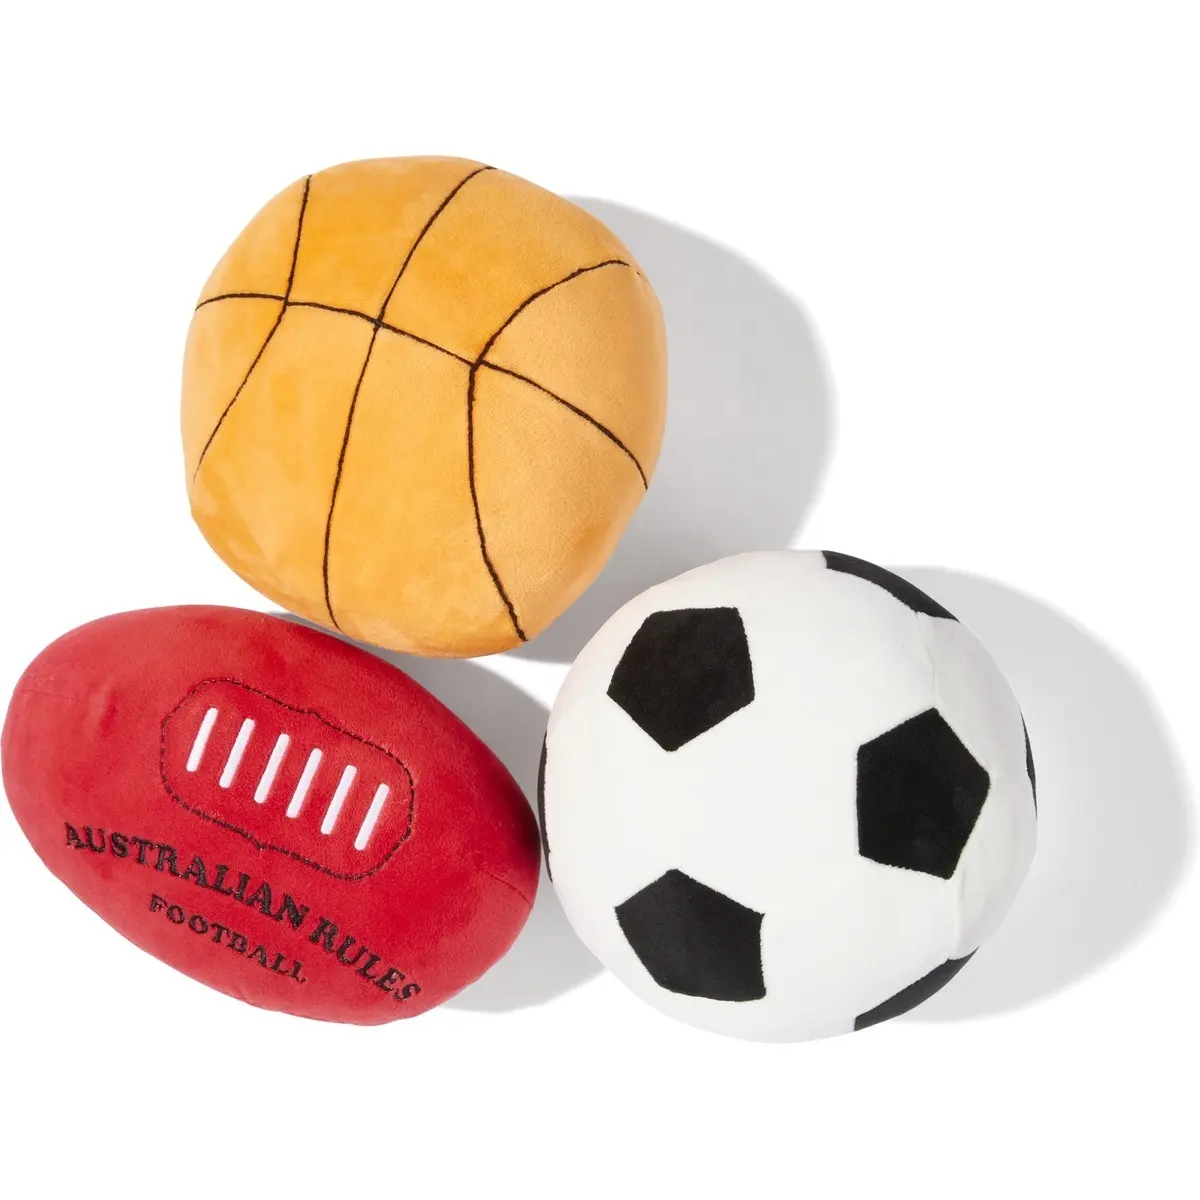 Plüsch Sport Ball Assorted Super weiche sport ball basketball fußball rugby NFL rugger plüsch spielzeug für kinder